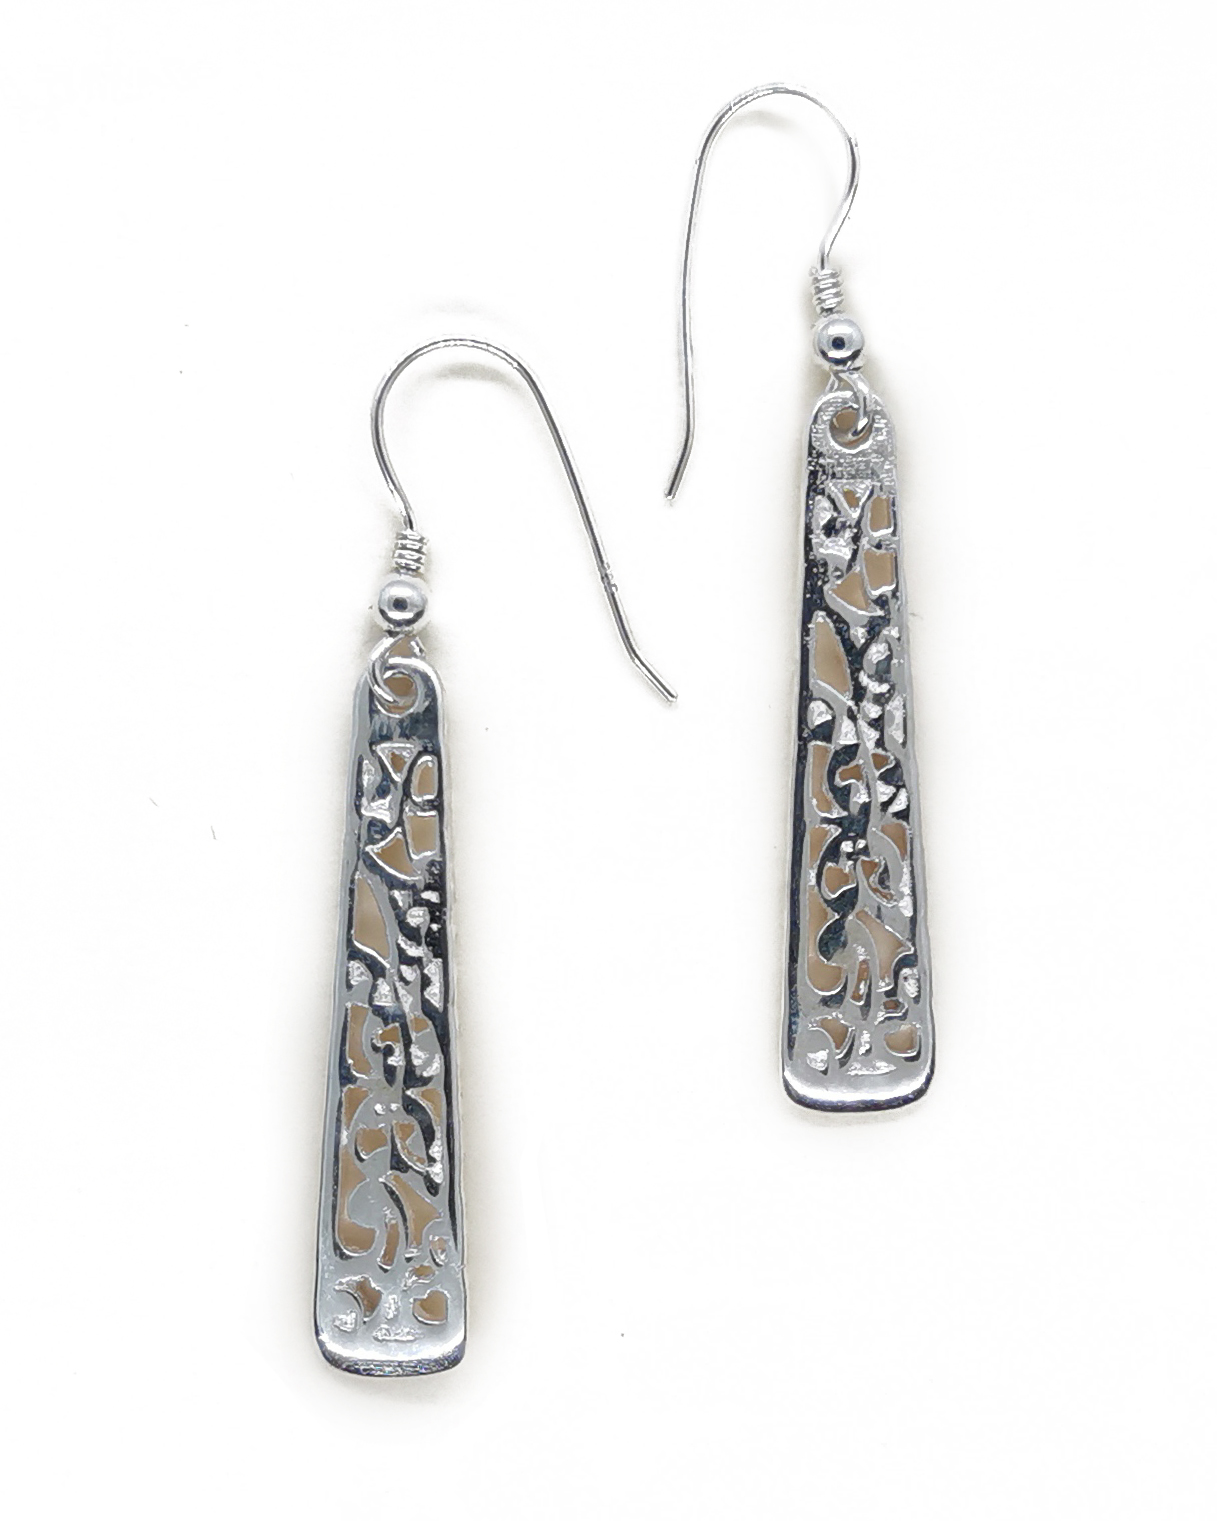 Koru motif earring sterling silver